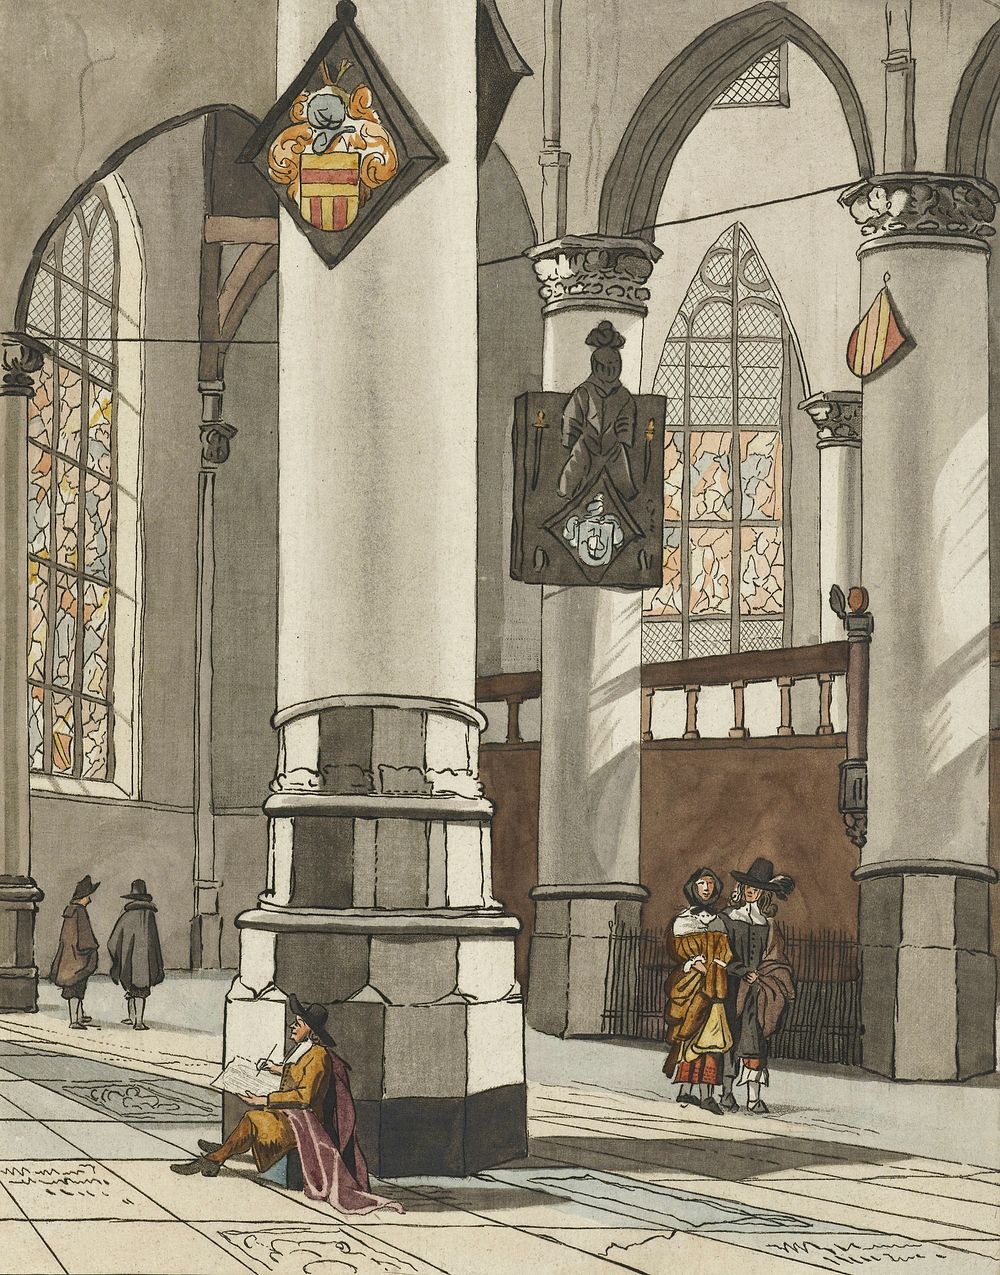 Kerkinterieur (1774) by Cornelis Ploos van Amstel. Original from The Rijksmuseum. Digitally enhanced by rawpixel.